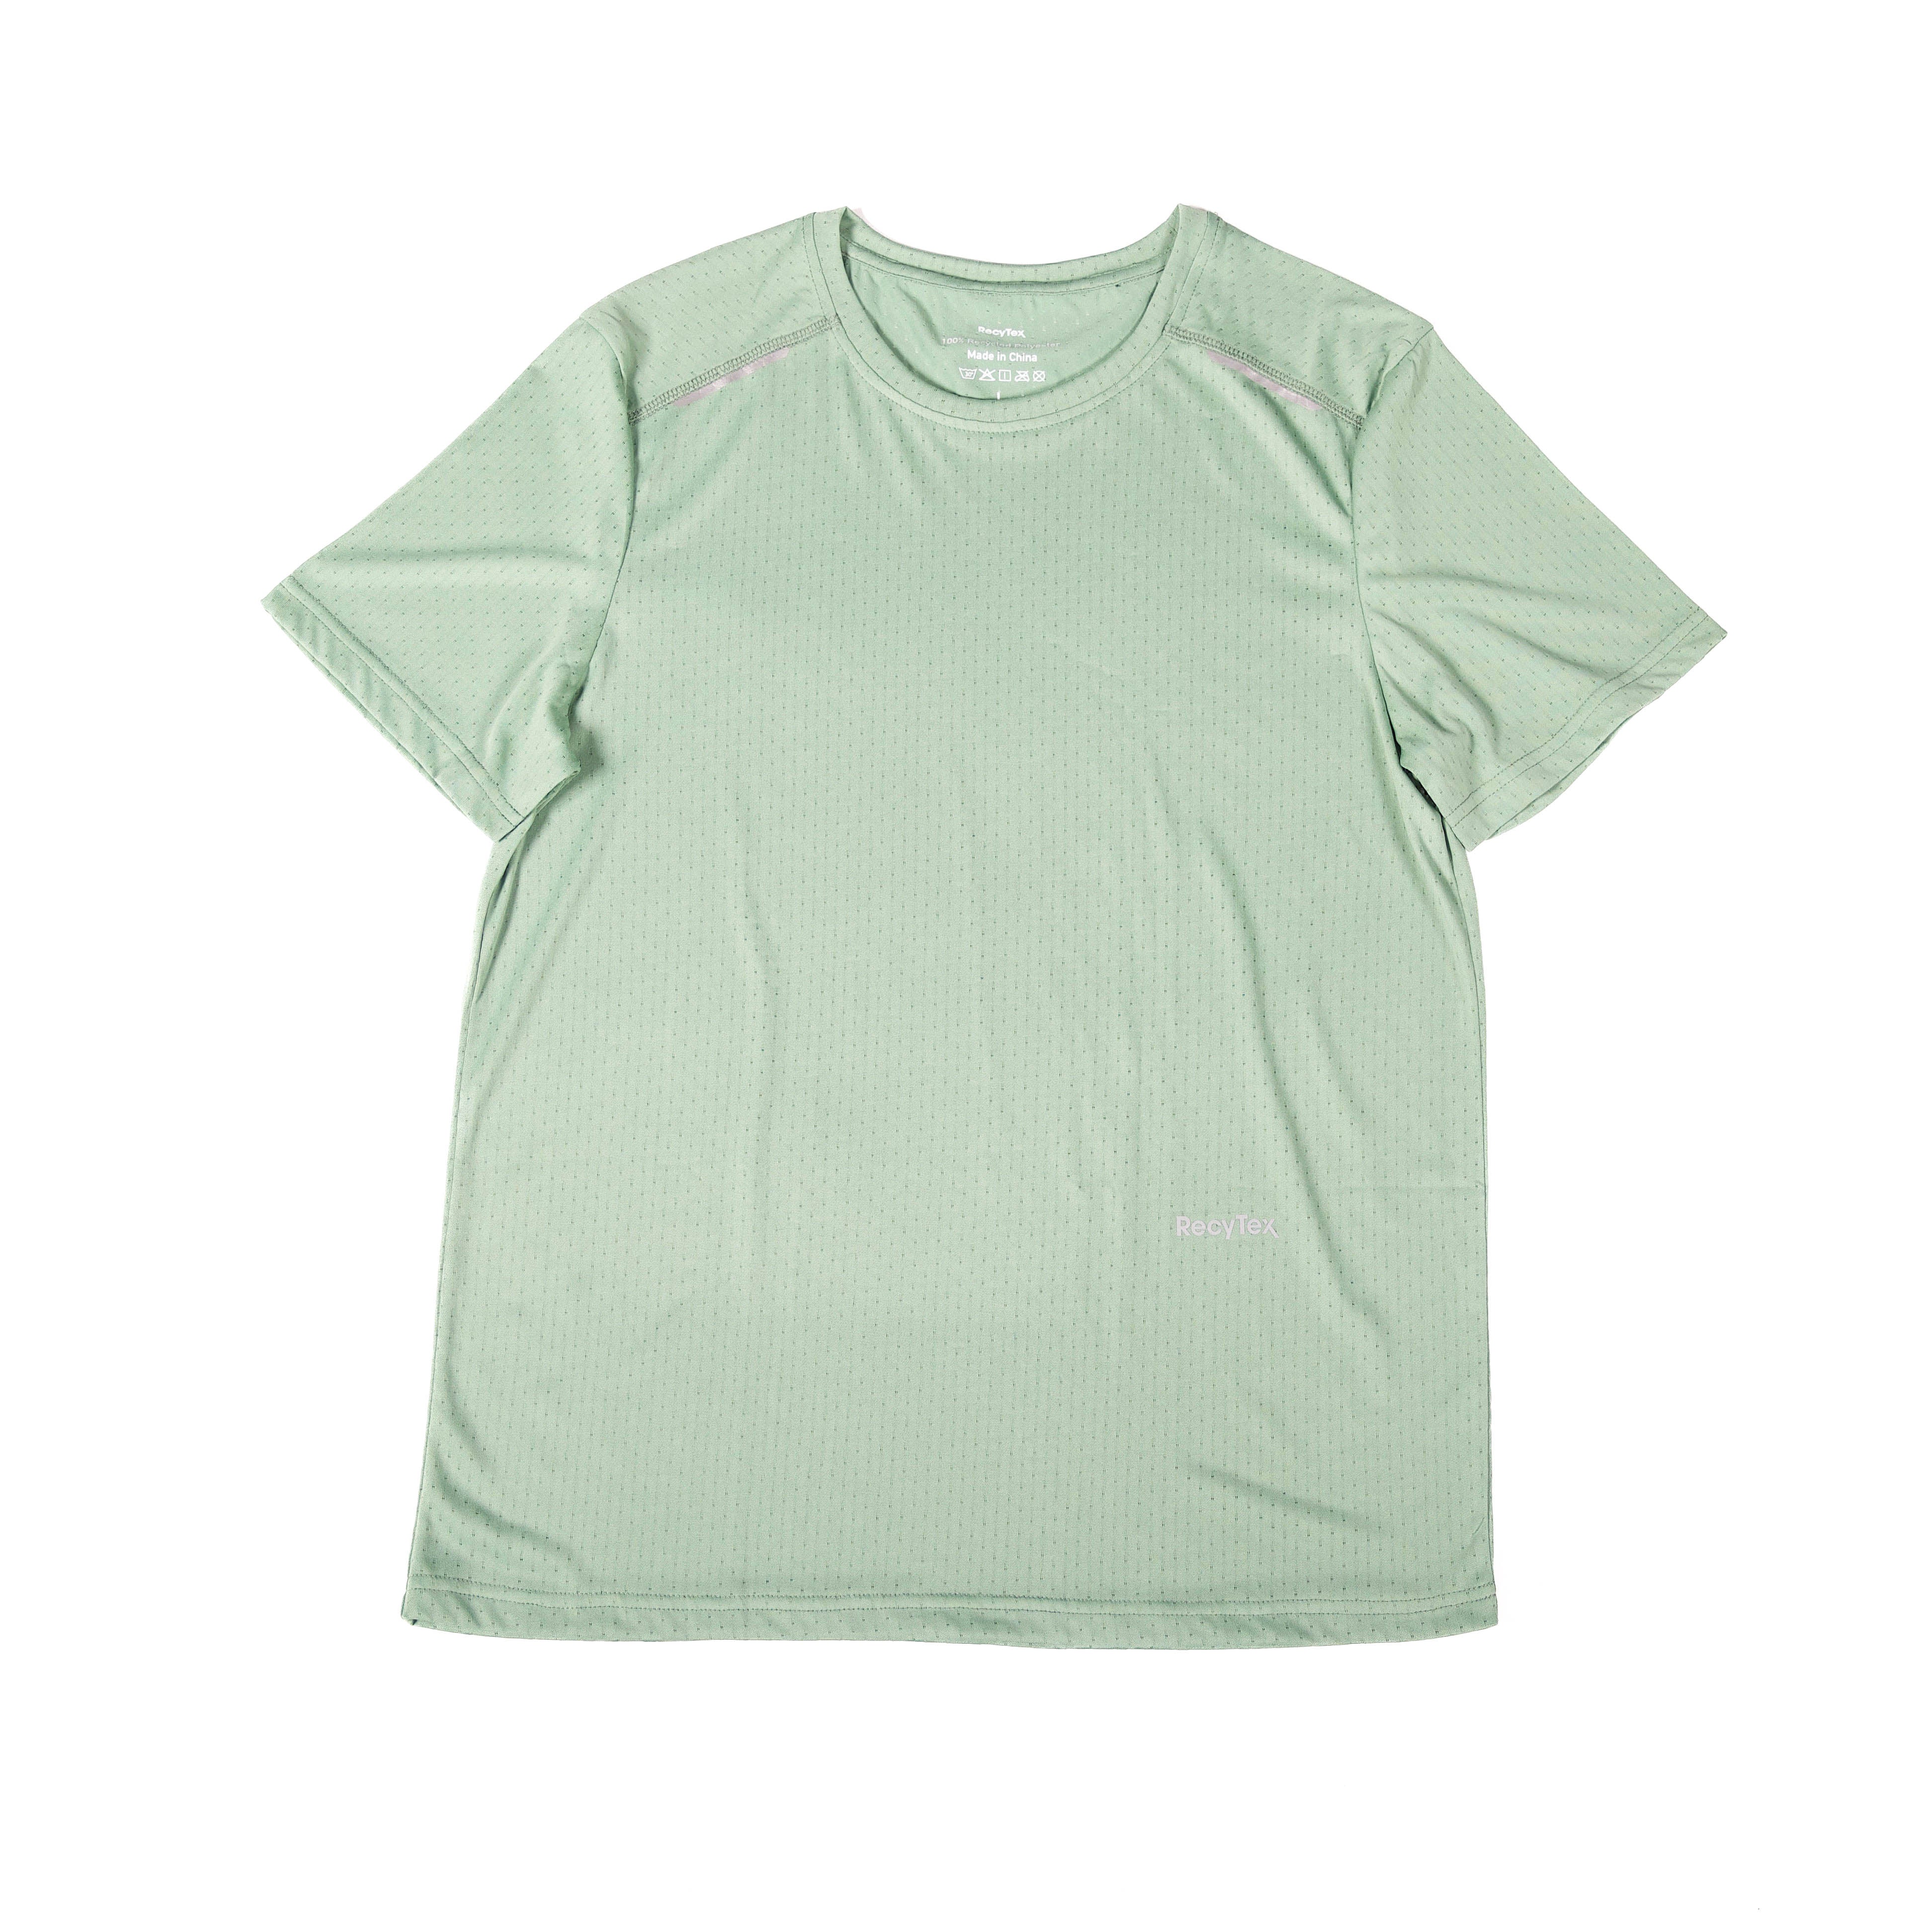 10 Bottle T-Shirt - Sea Green